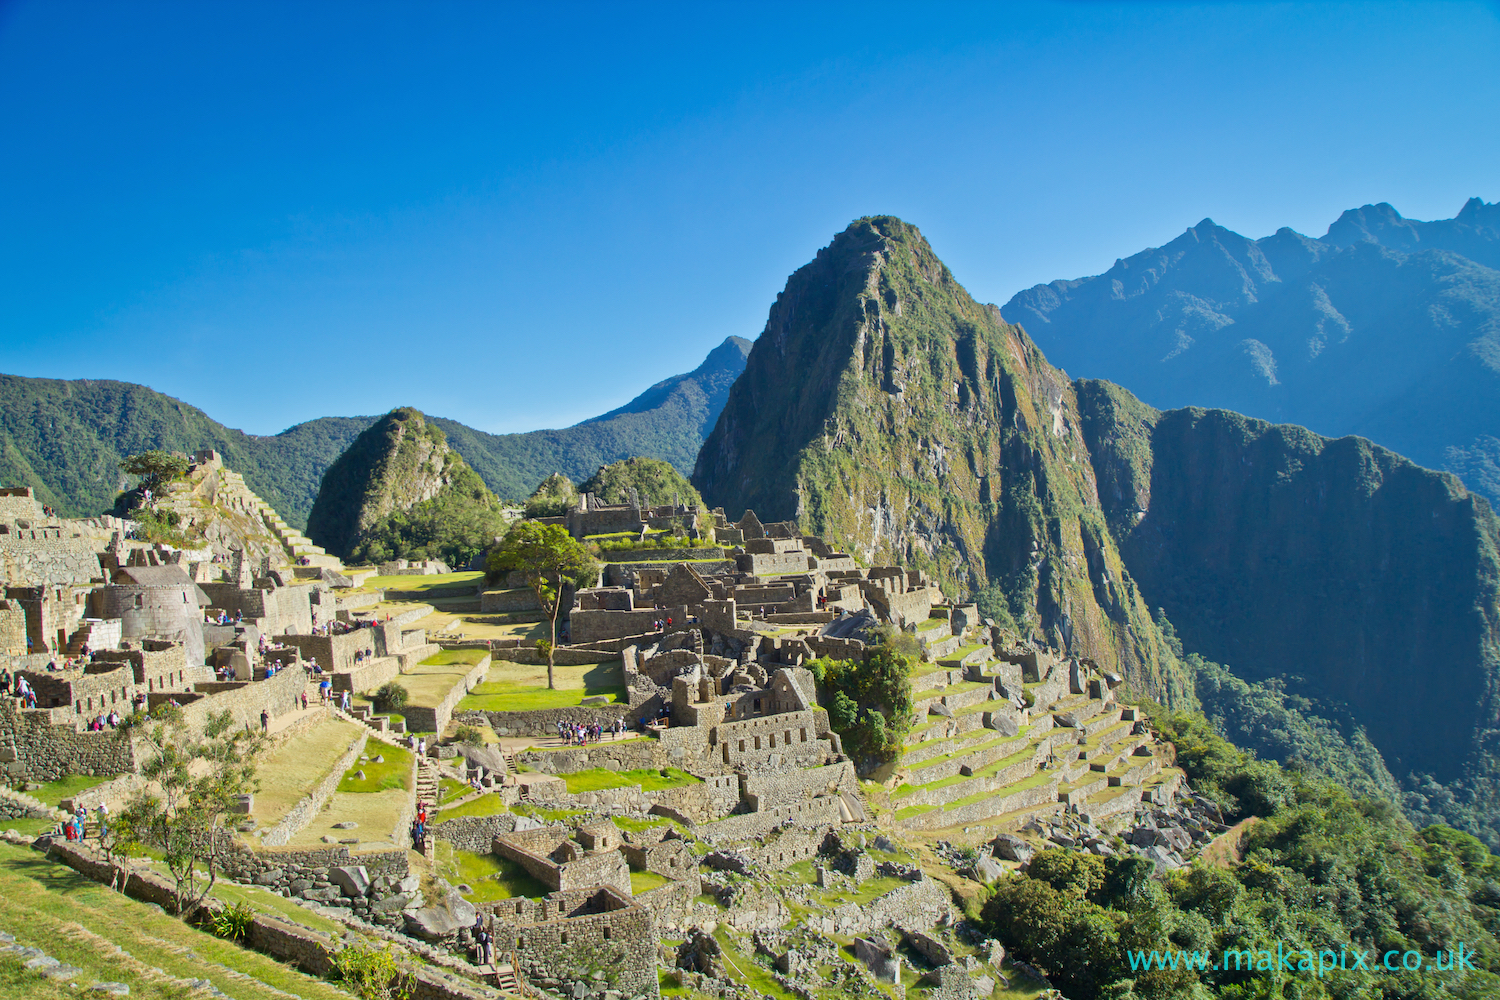 Machu Picchu and Huayna Picchu